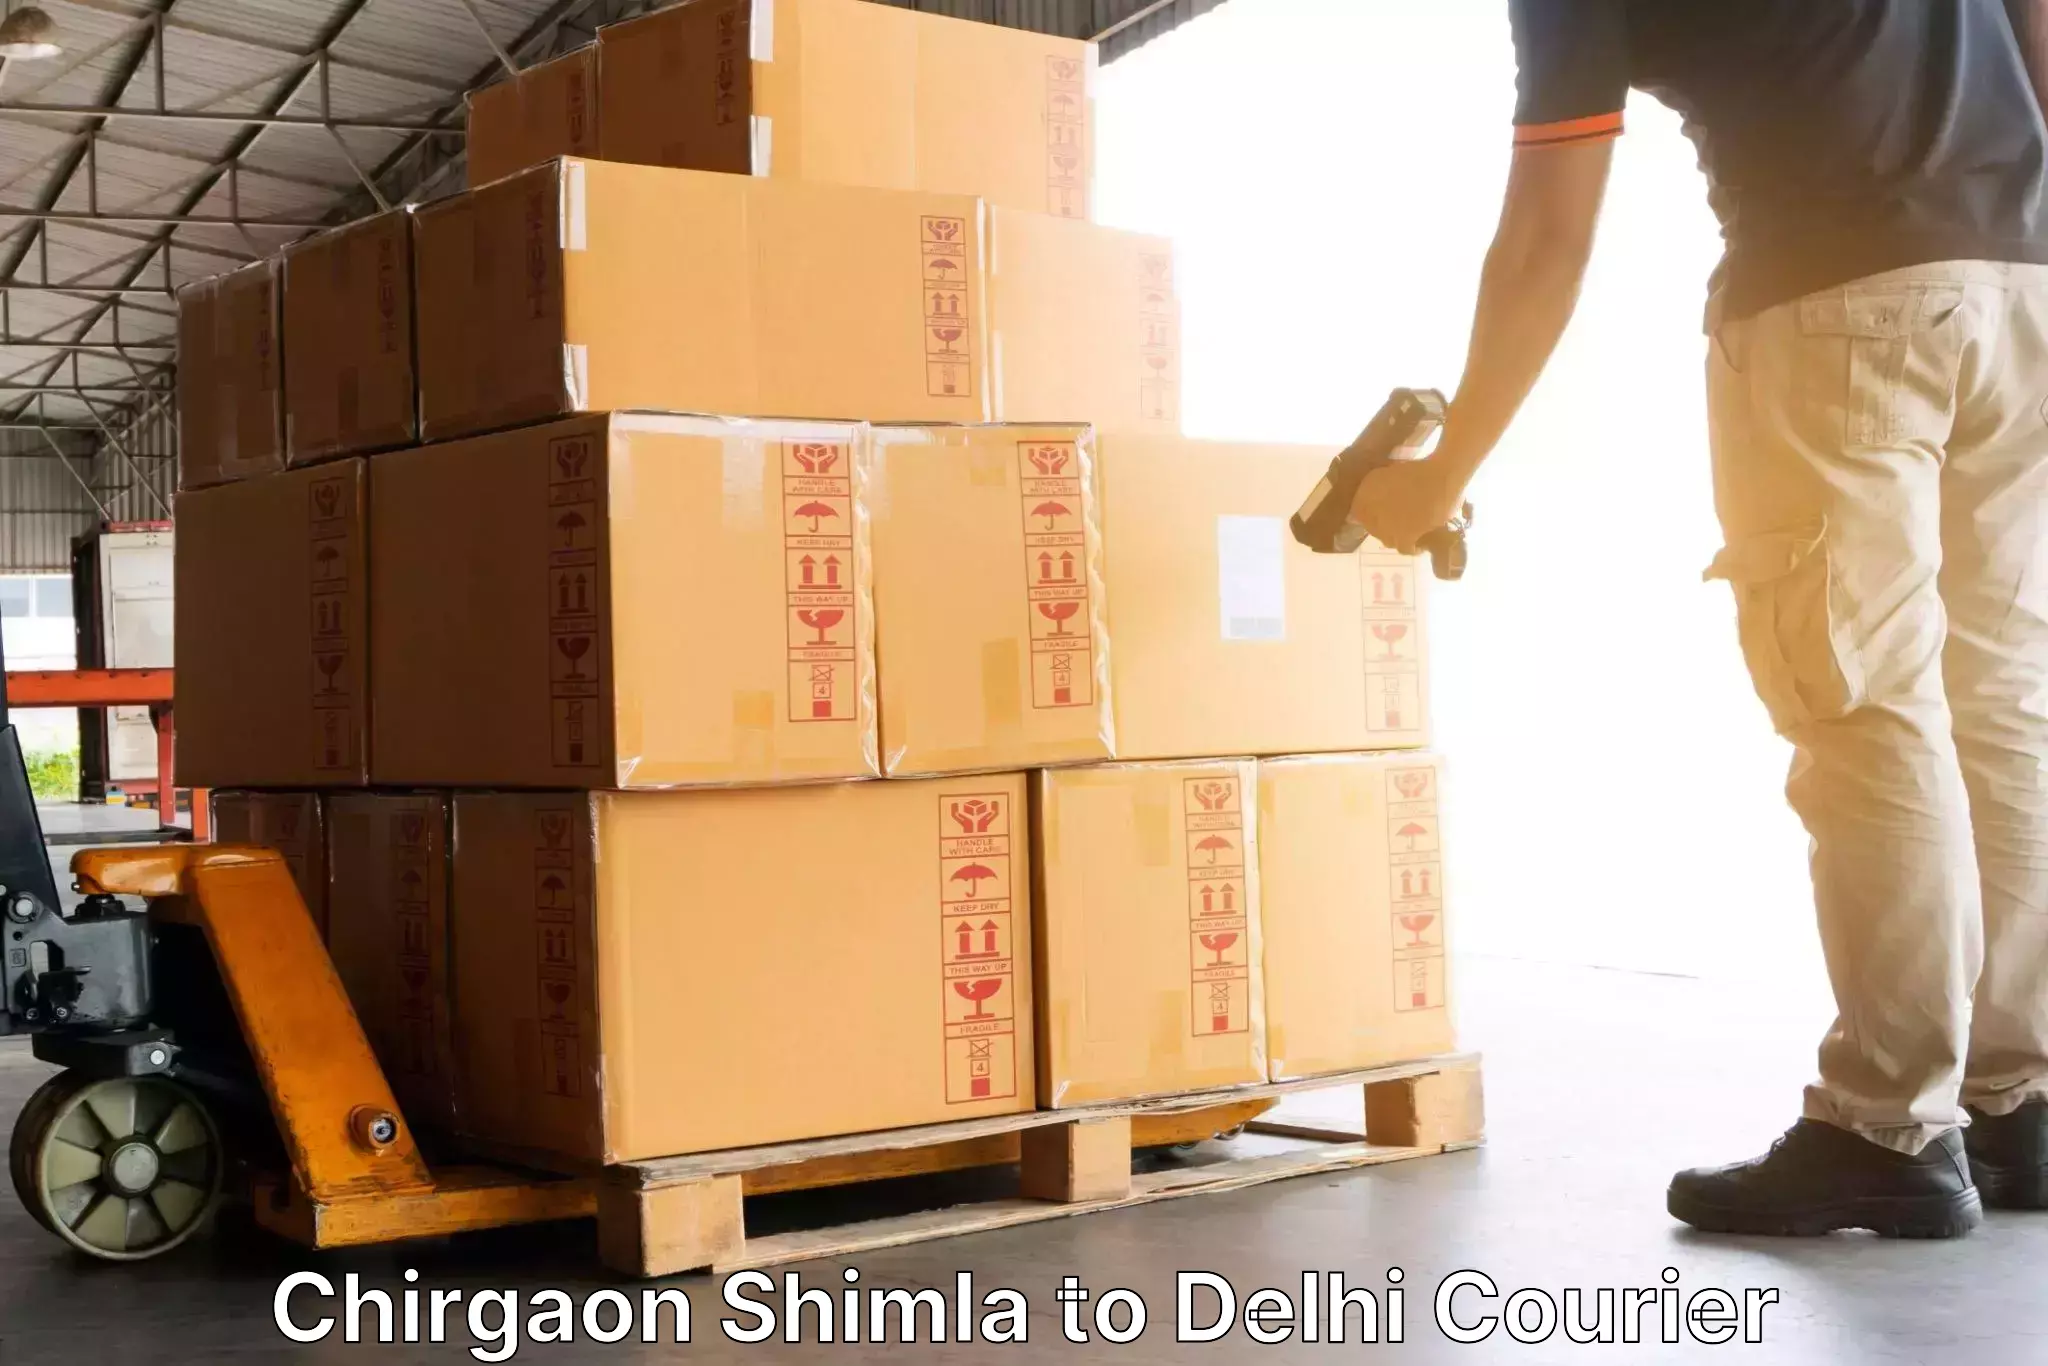 Global logistics network Chirgaon Shimla to Ashok Vihar